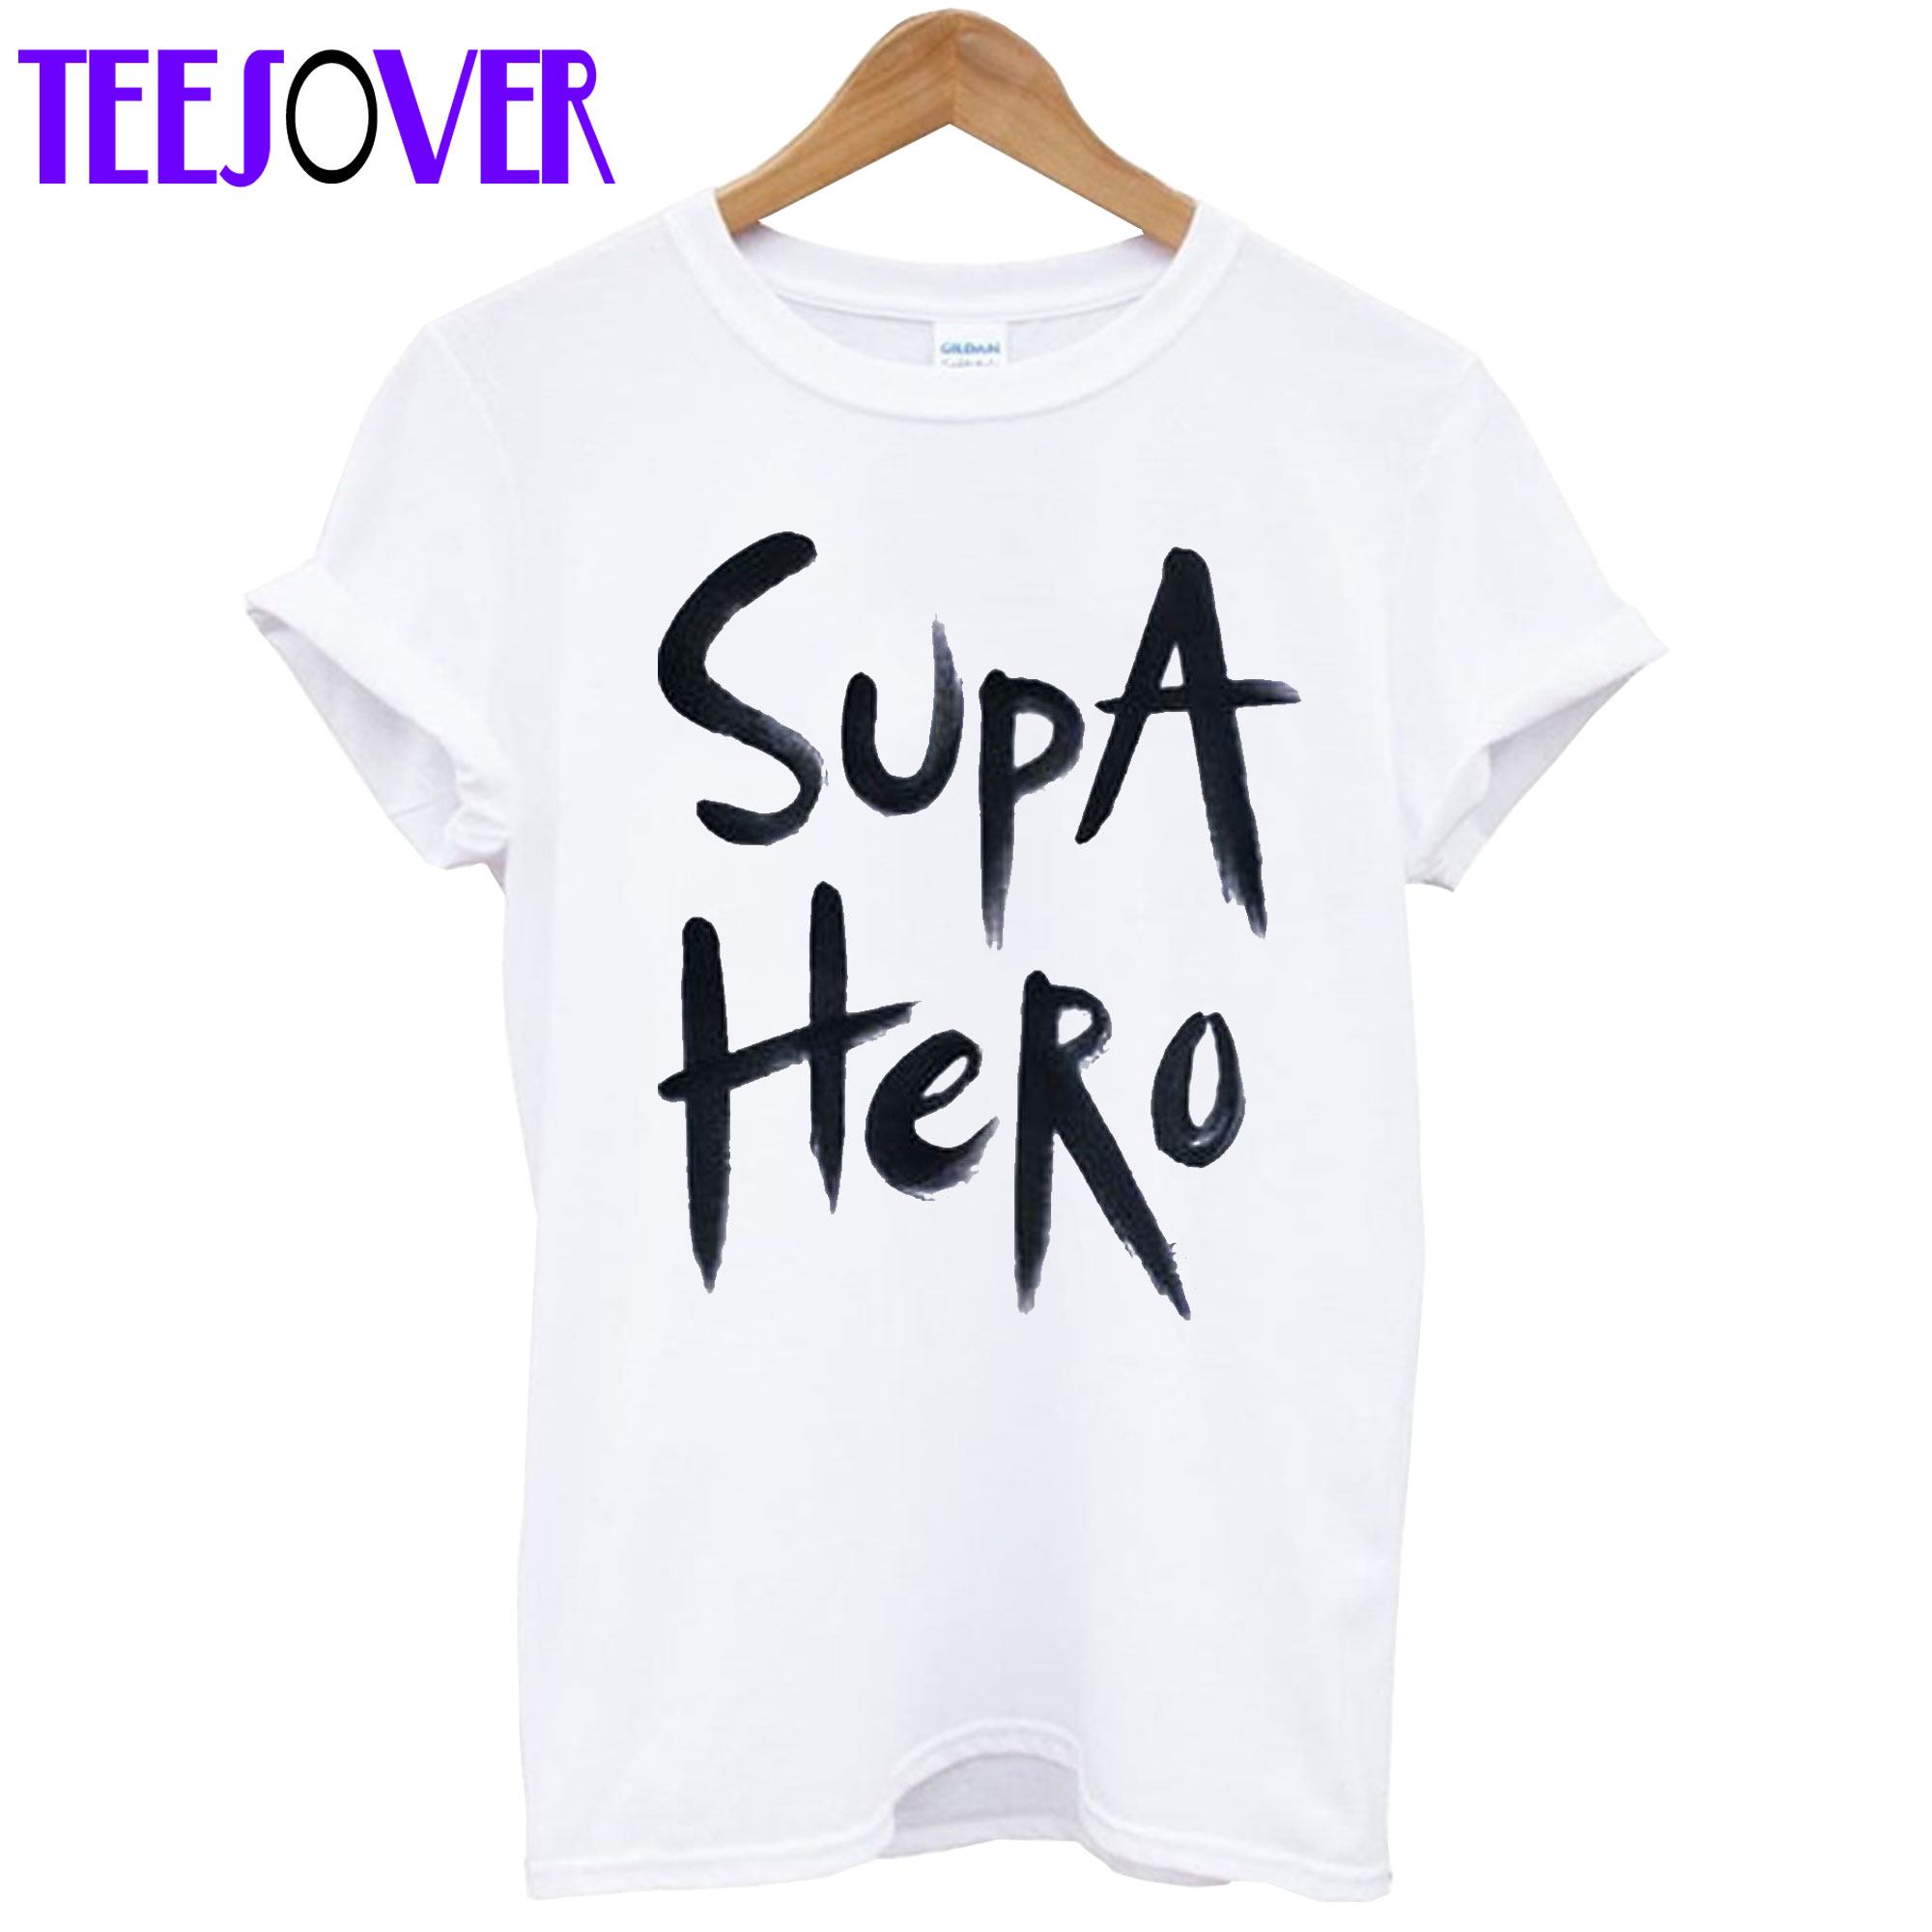 Supa Hero Hand Painted T-shirt